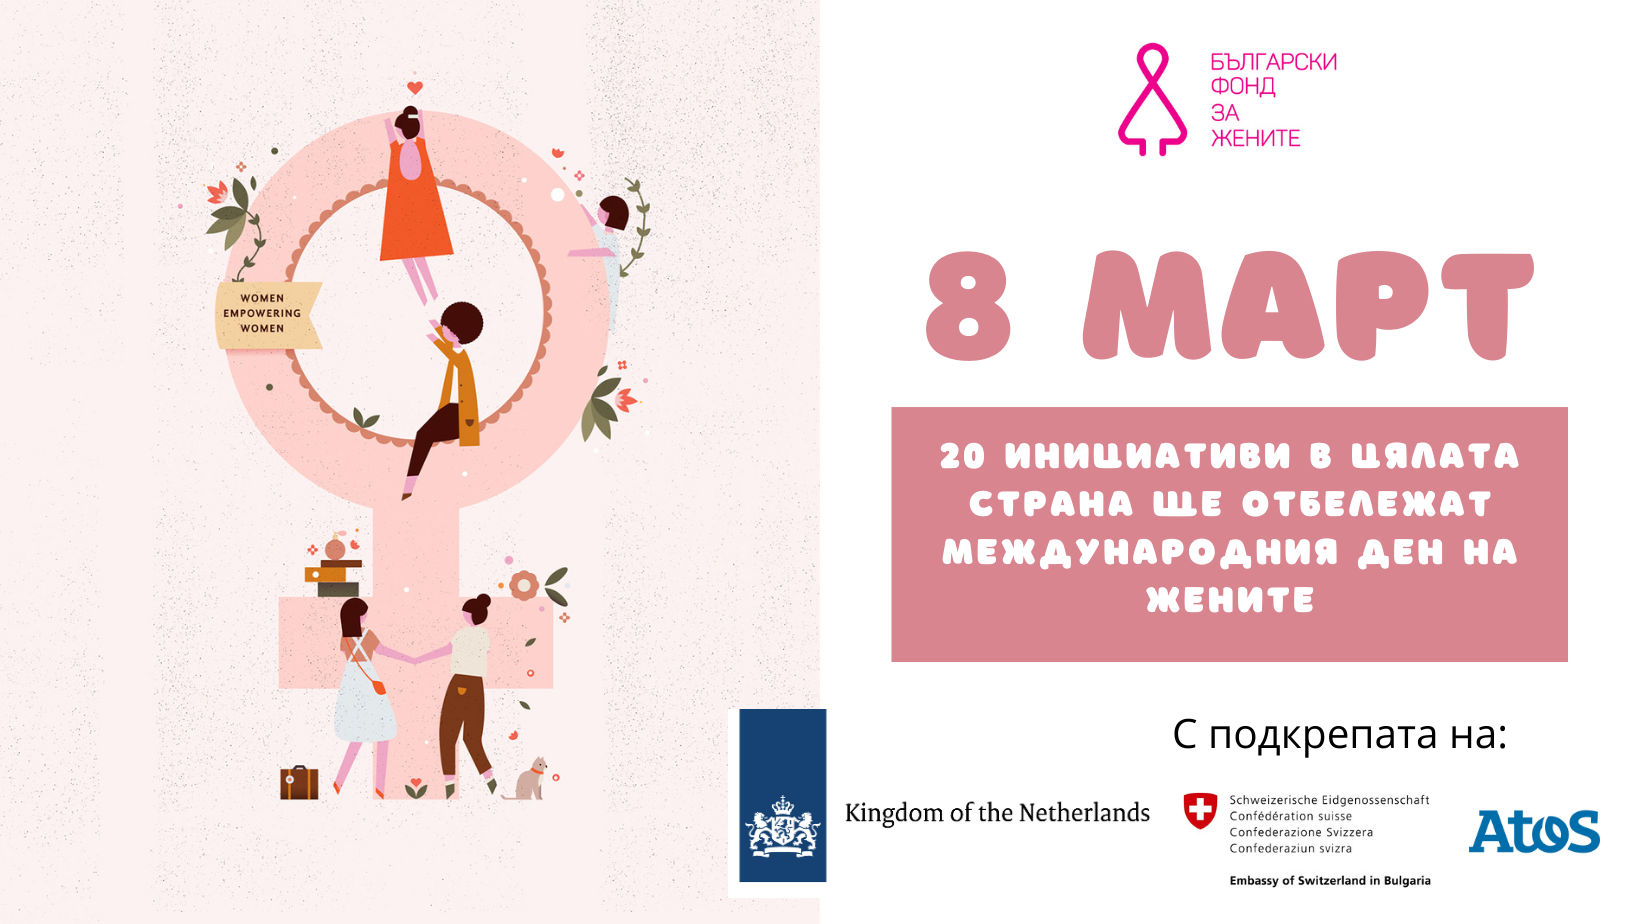 20 проекти в цялата страна ще отбележат 8 март и постиженията на жените